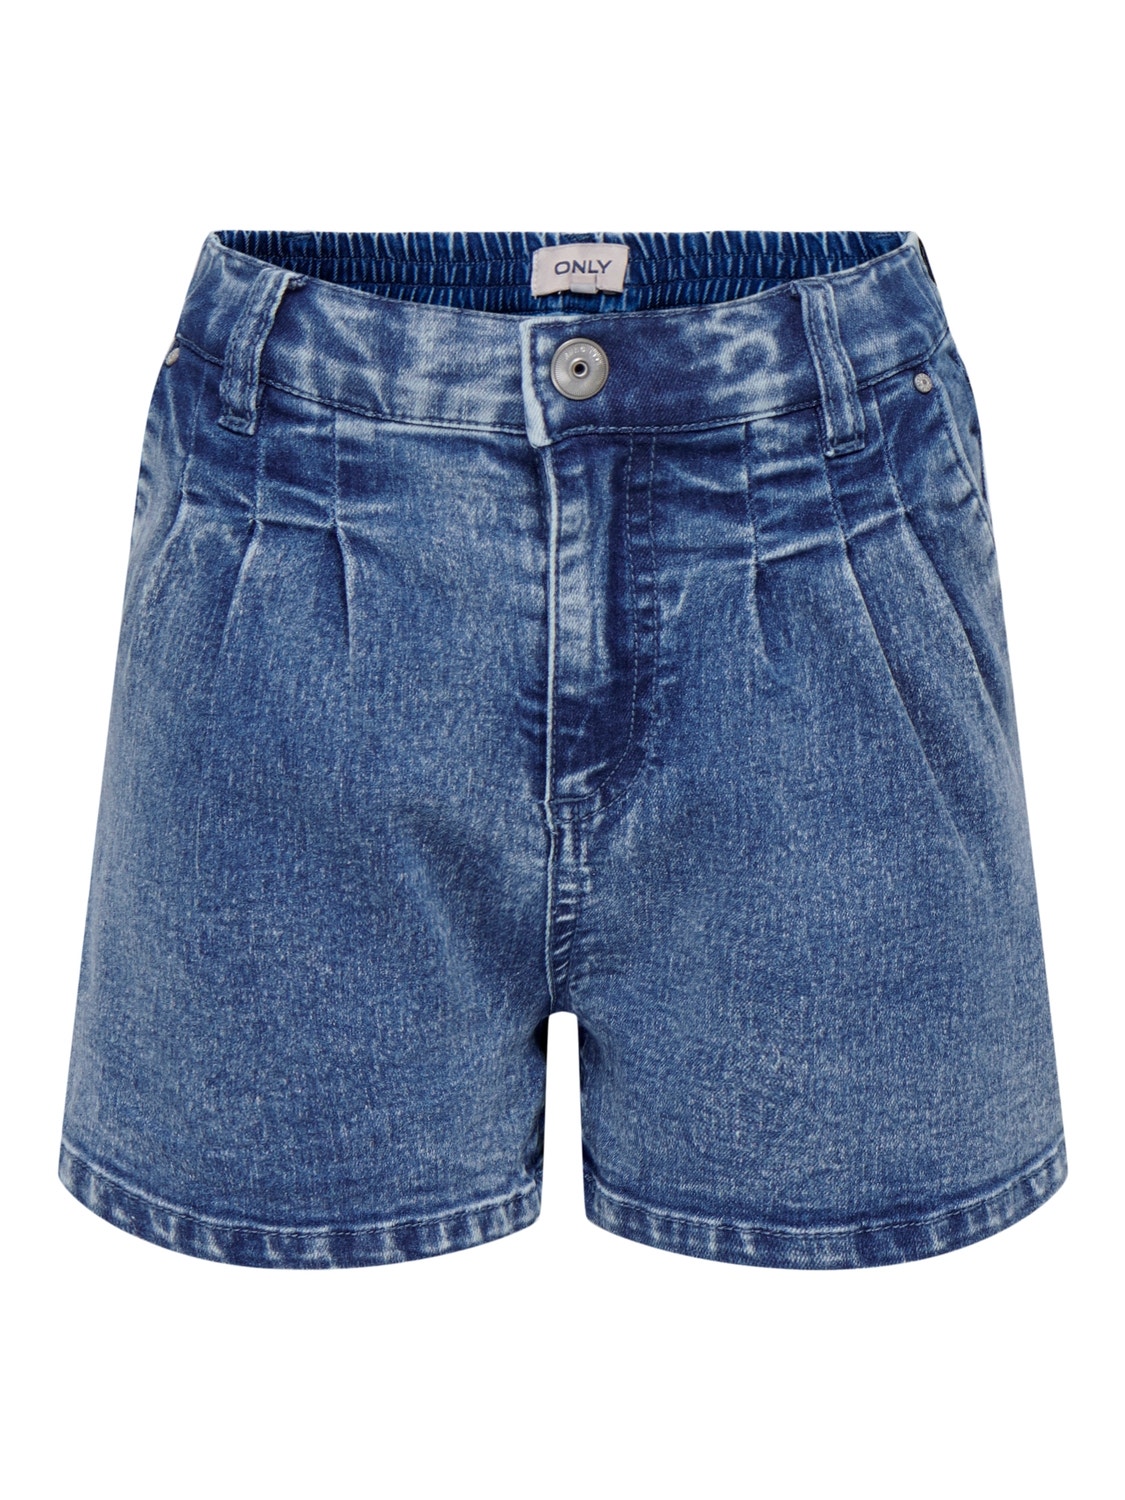 ONLY Skinny Fit Shorts -Medium Blue Denim - 15260697